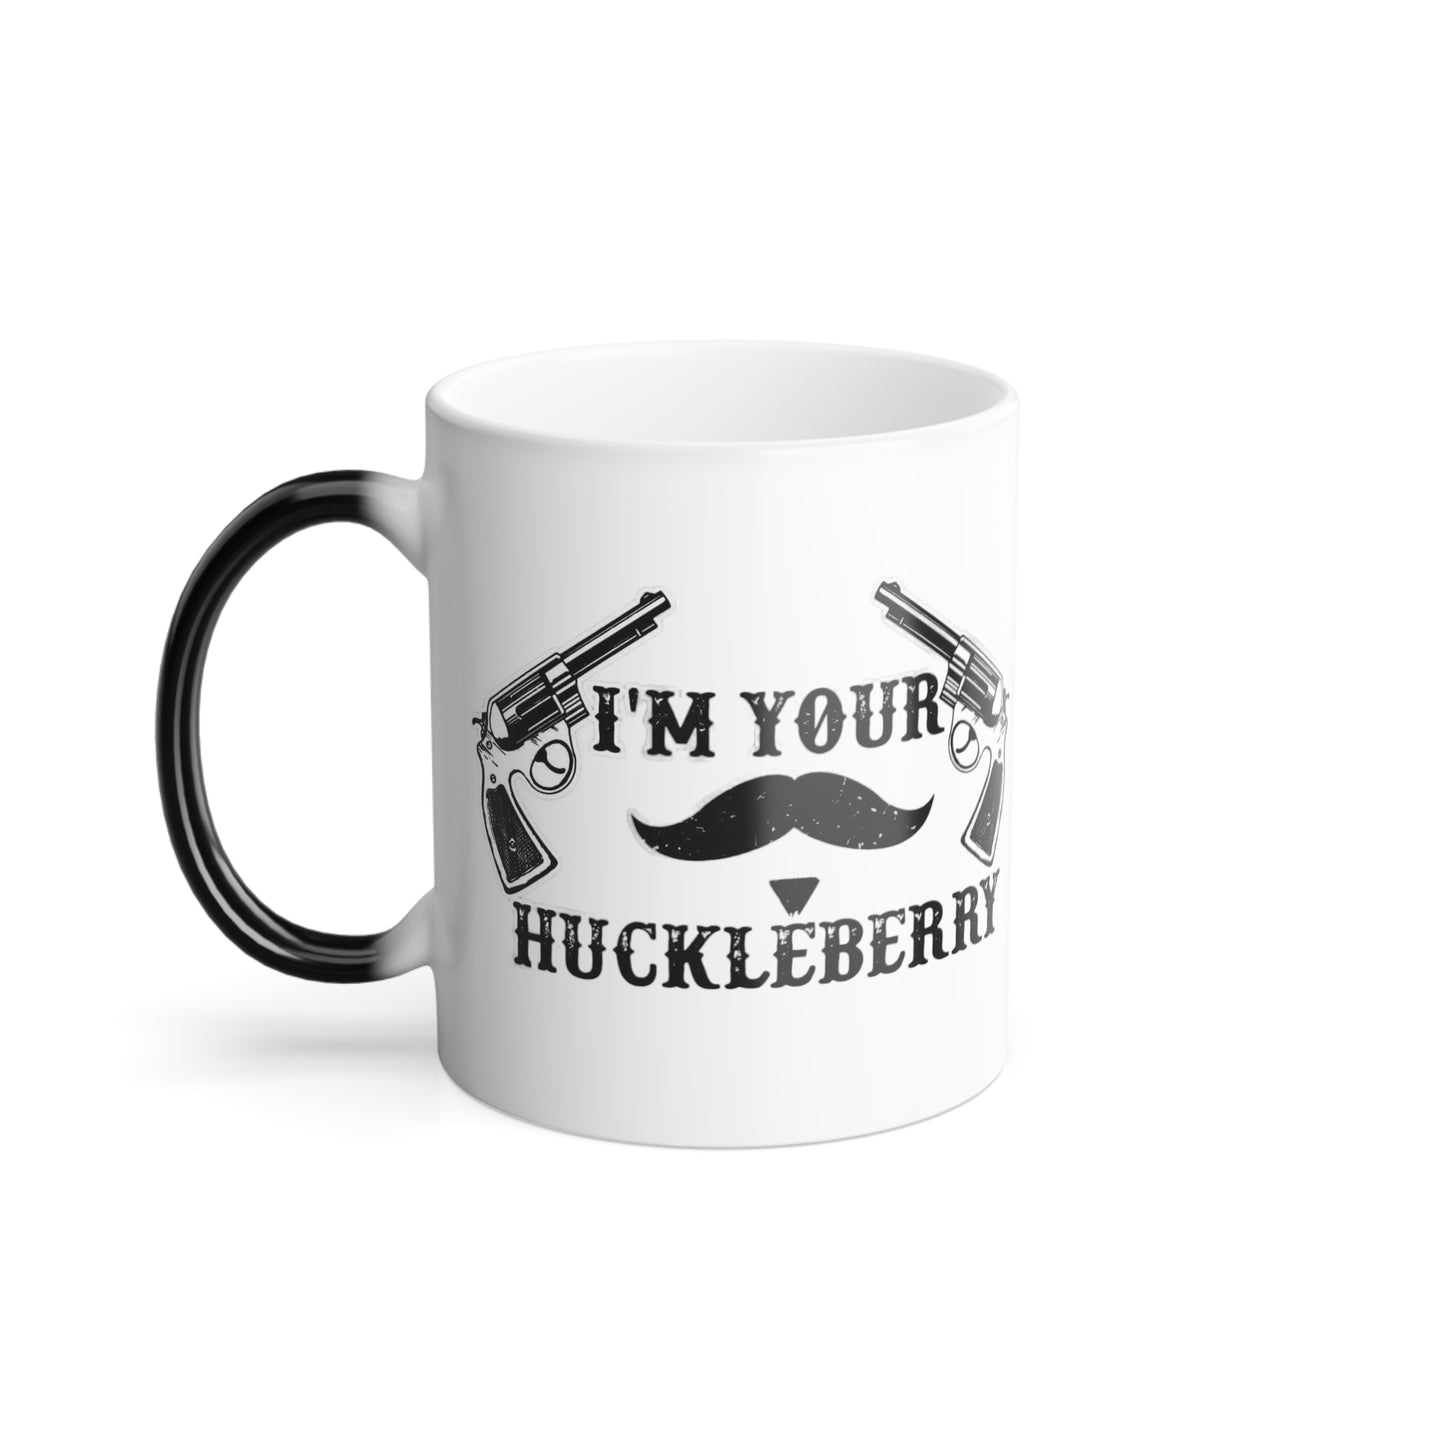 Huckleberry Mug, 11oz